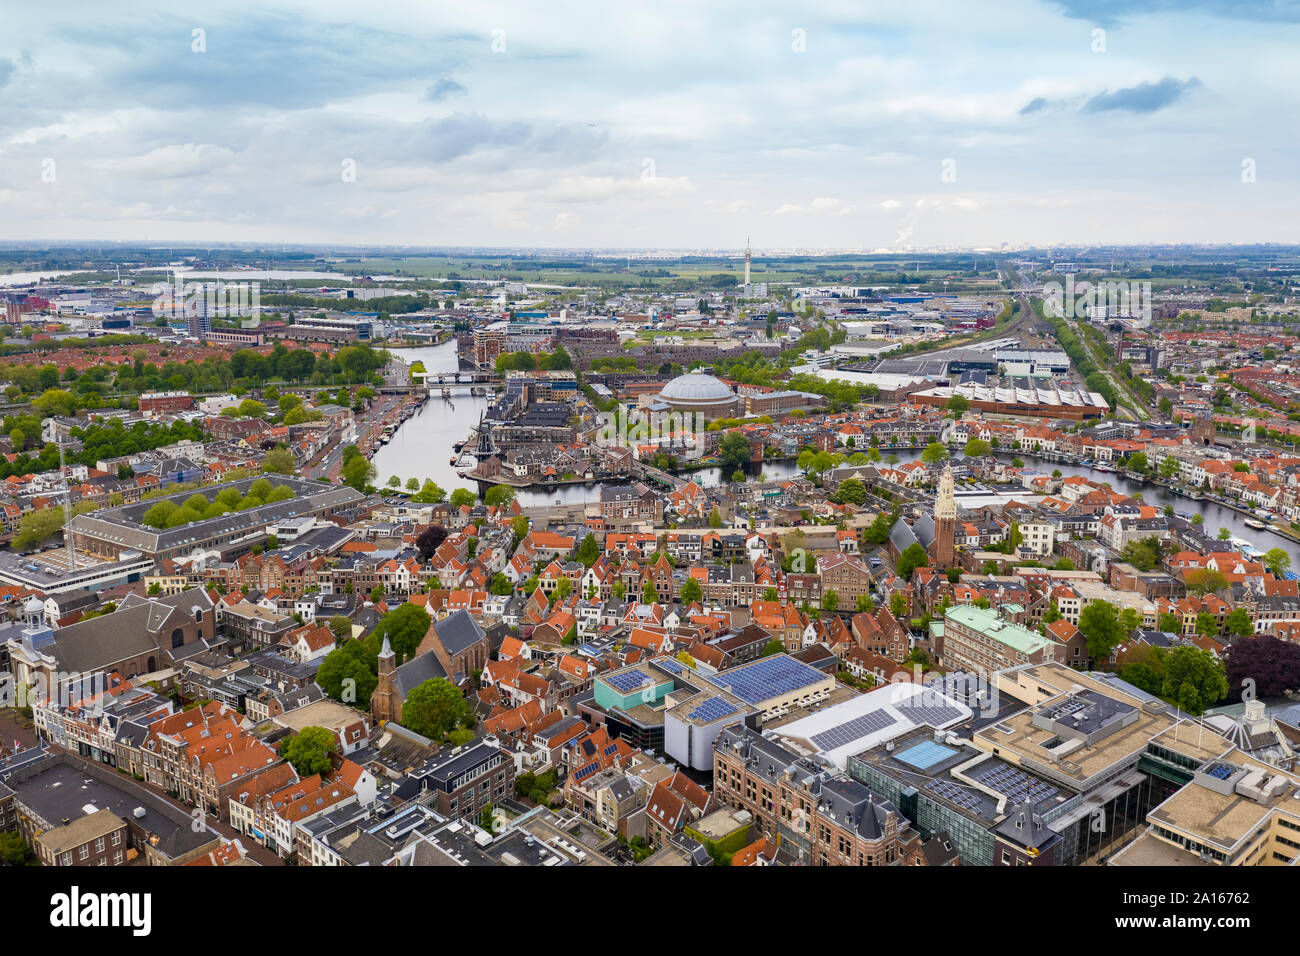 Vista aérea de la ciudad de Haarlem contra el cielo nublado Foto de stock